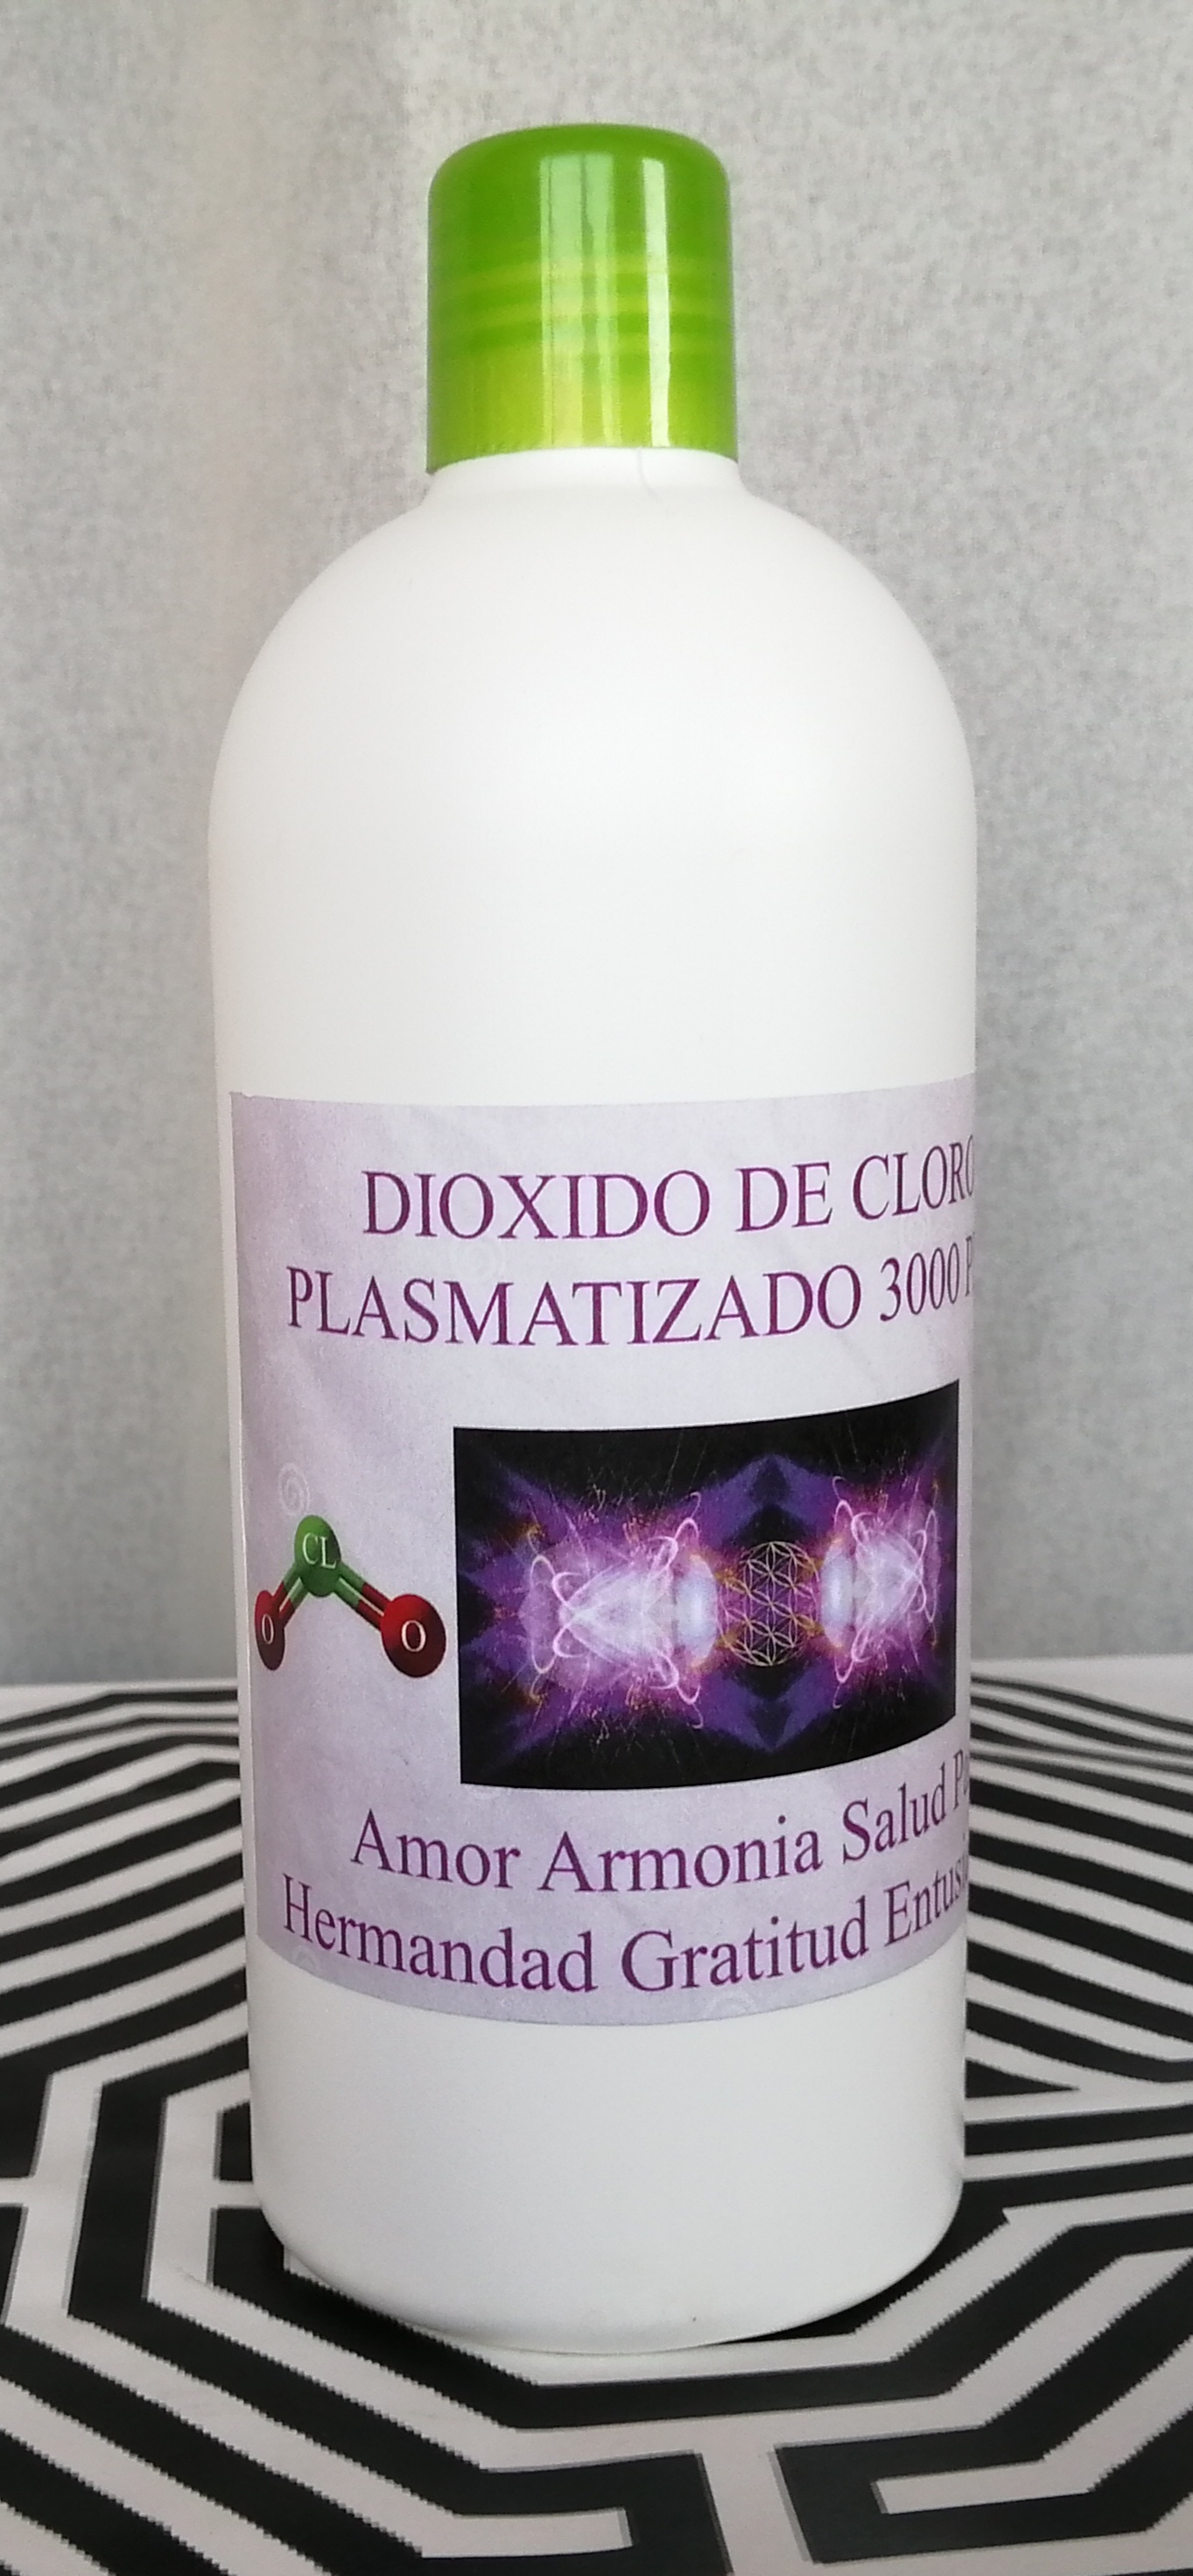 CDS 3000 ppm Diossido di Cloro uso umano (250 ml) elaborato con la tecnologia al Plasma